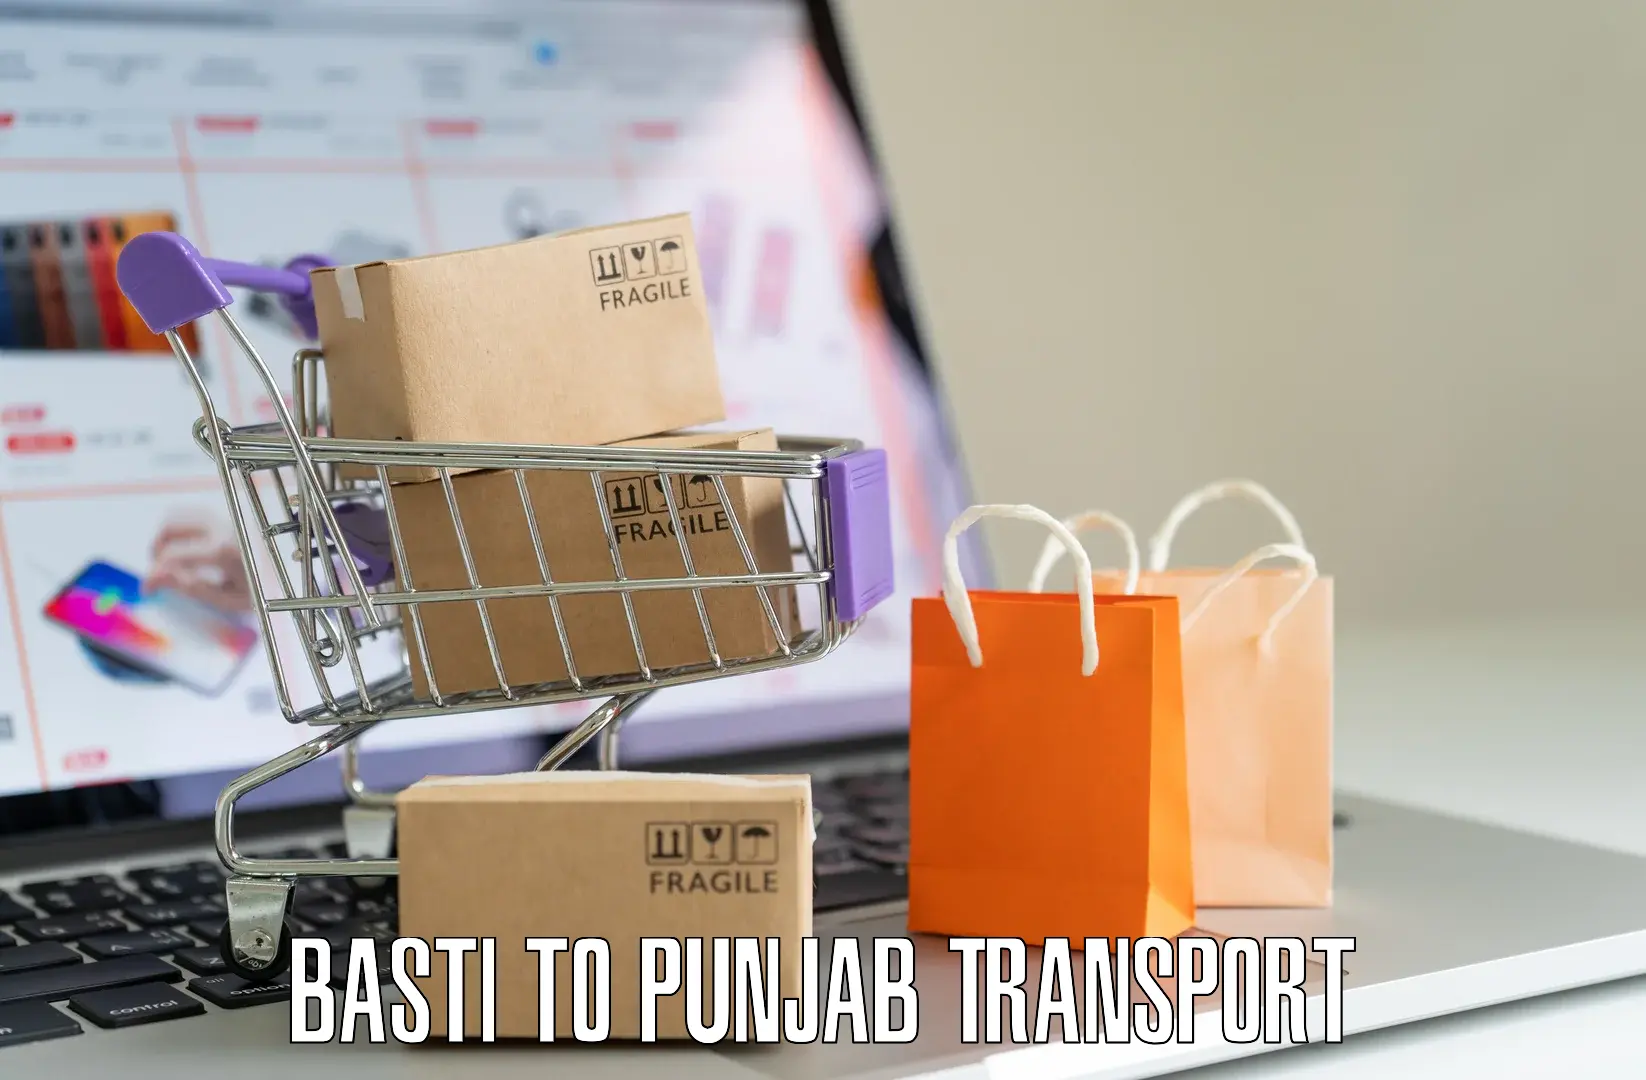 Pick up transport service Basti to Faridkot